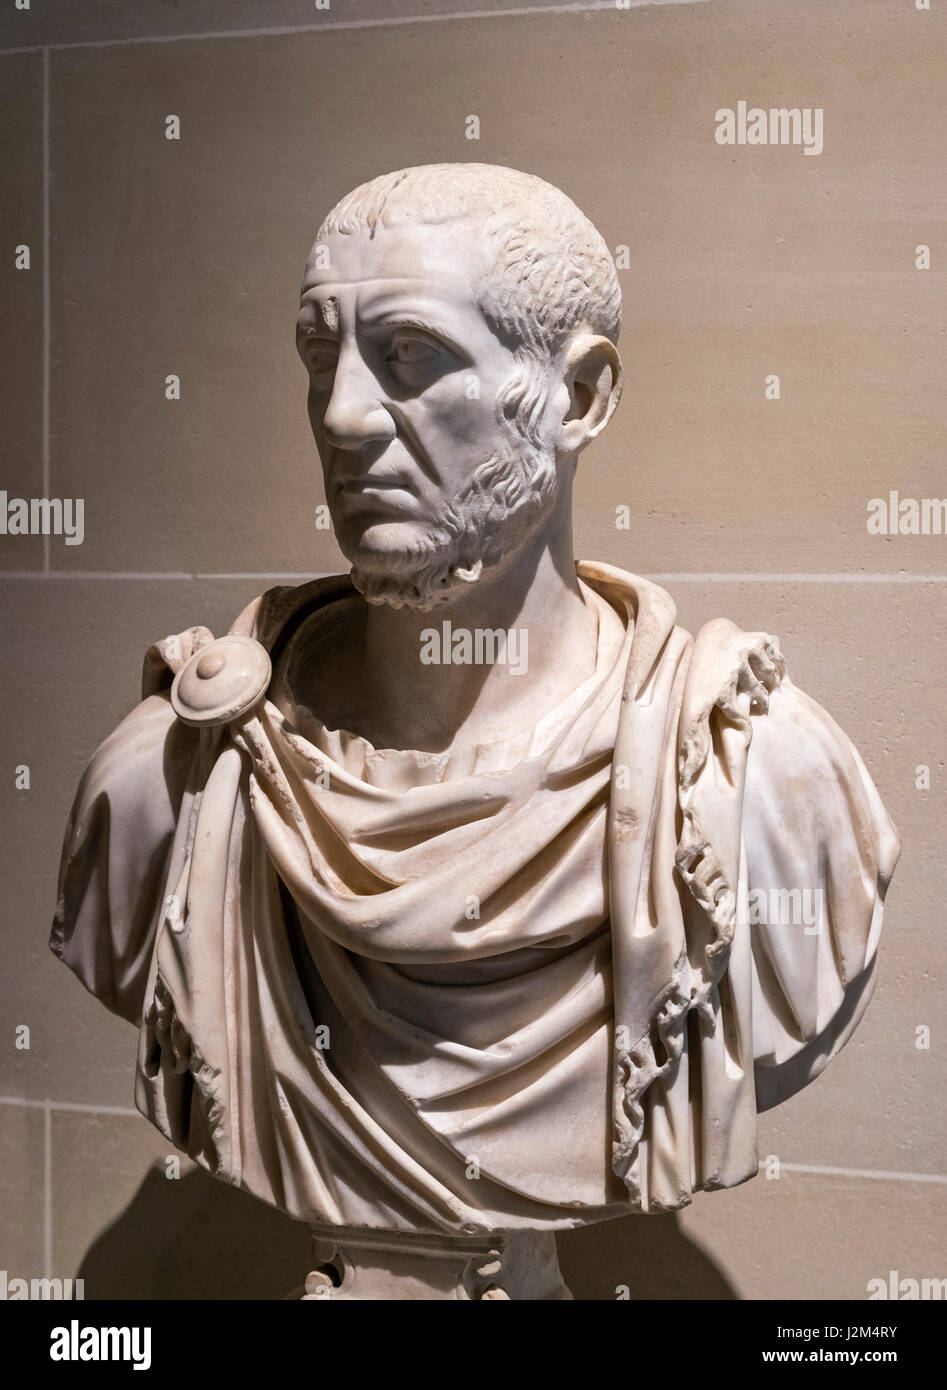 Testa di marmo dell'Imperatore Tacito (Marco Claudio Tacito Augusto: c. AD 200-276). Tacito era un imperatore romano da AD 275-276. Foto Stock